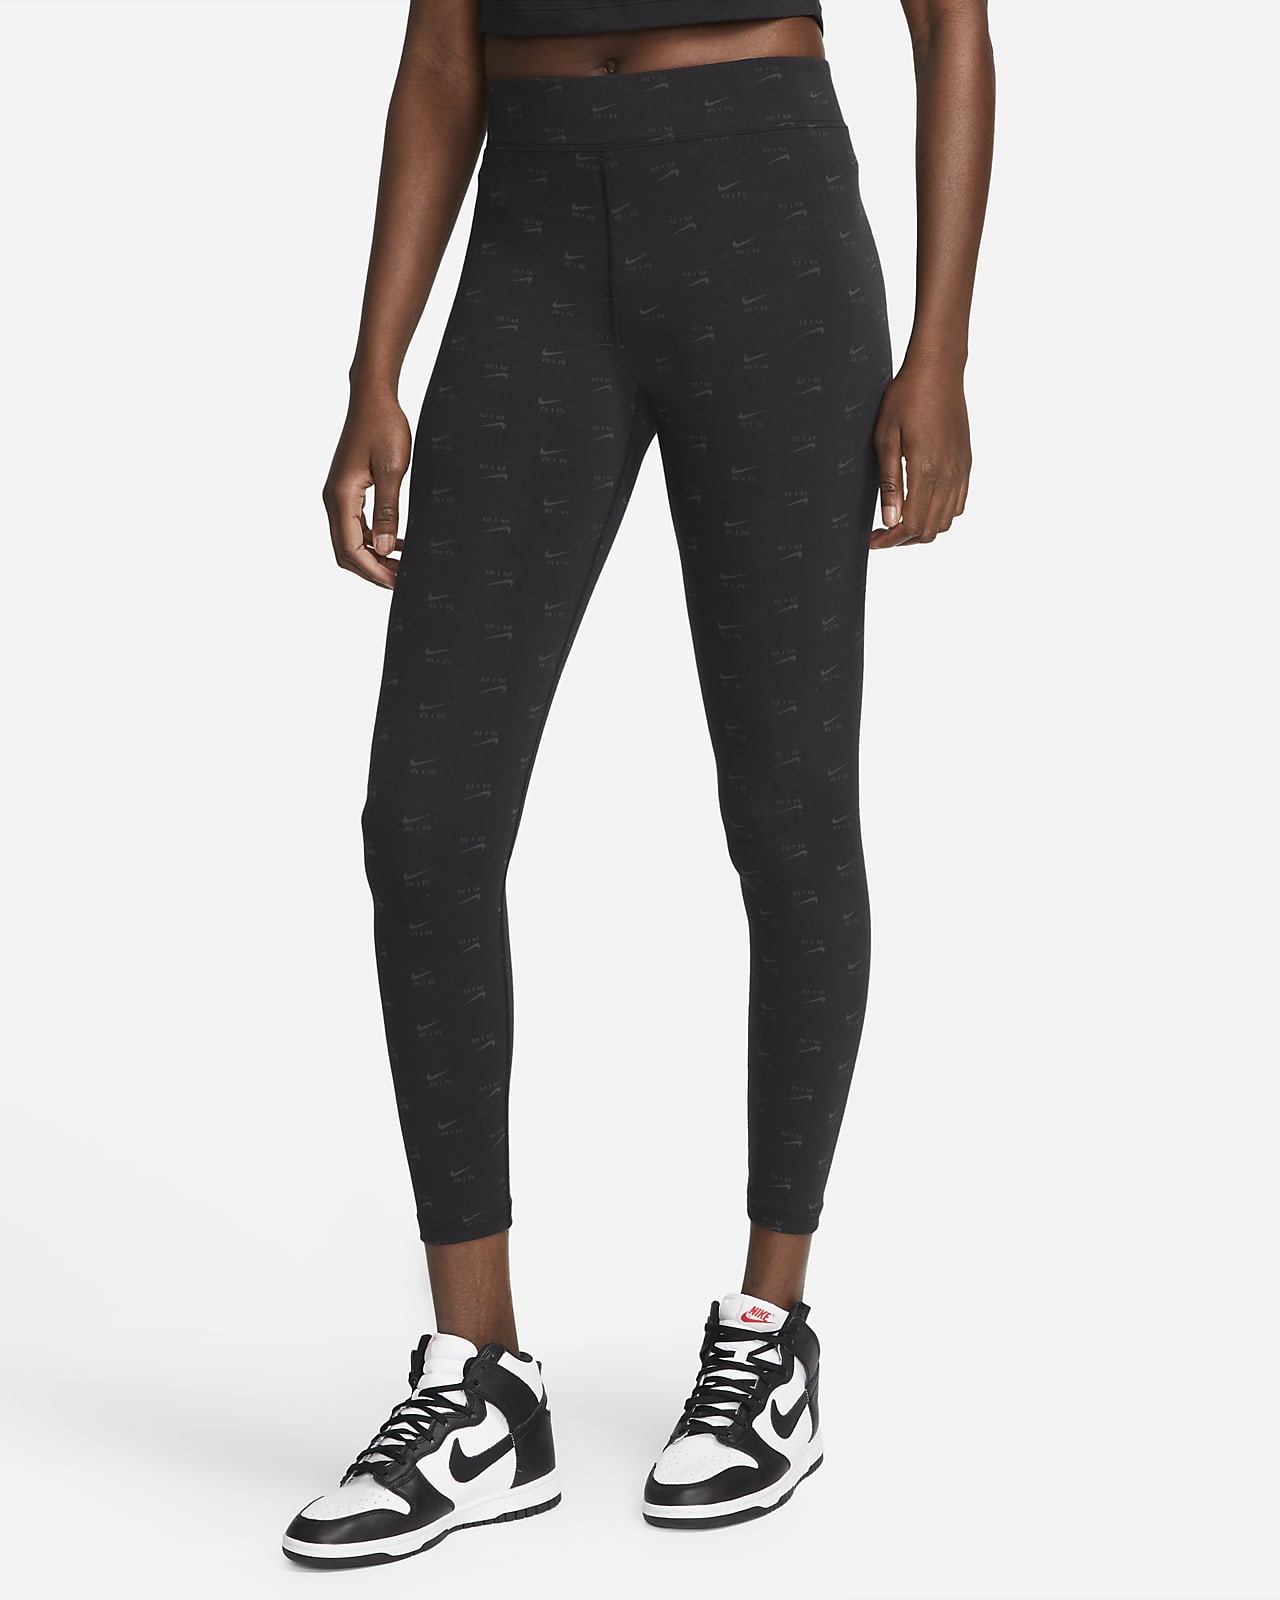 Nike Air Damen-Leggings mit hohem Bund und Print